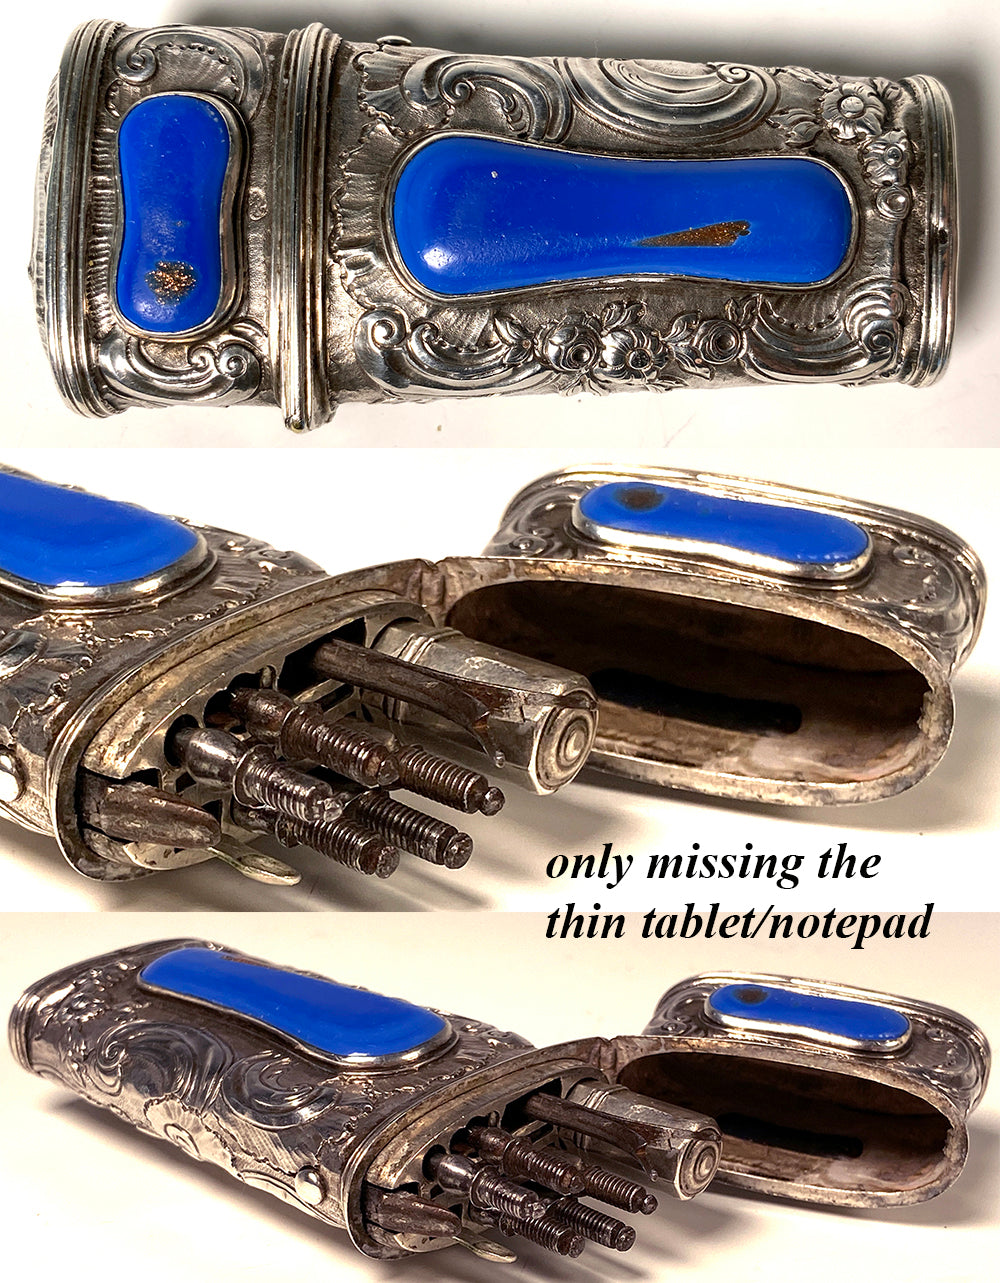 RARE 18th Century Antique French Vest Necessaire, Etui Blue Aventurine Complete with Original Tools